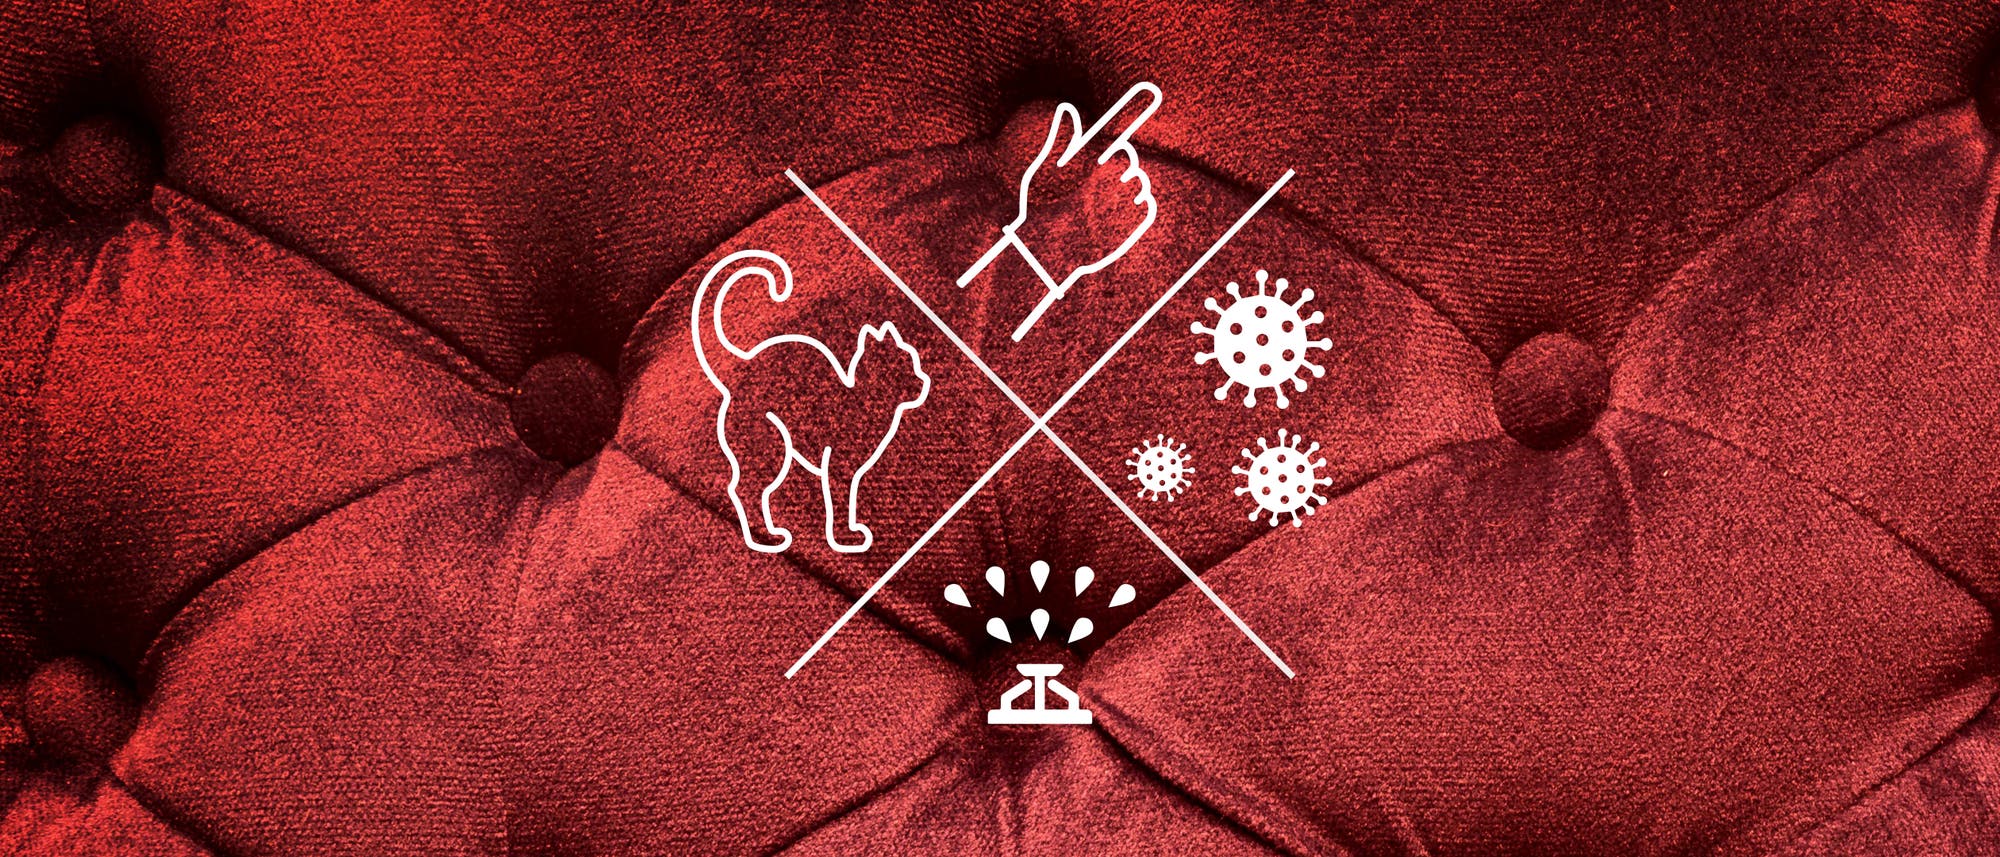 Symbole vor rotem Plüsch: Rasensprenger, Katze, Finger und Viren